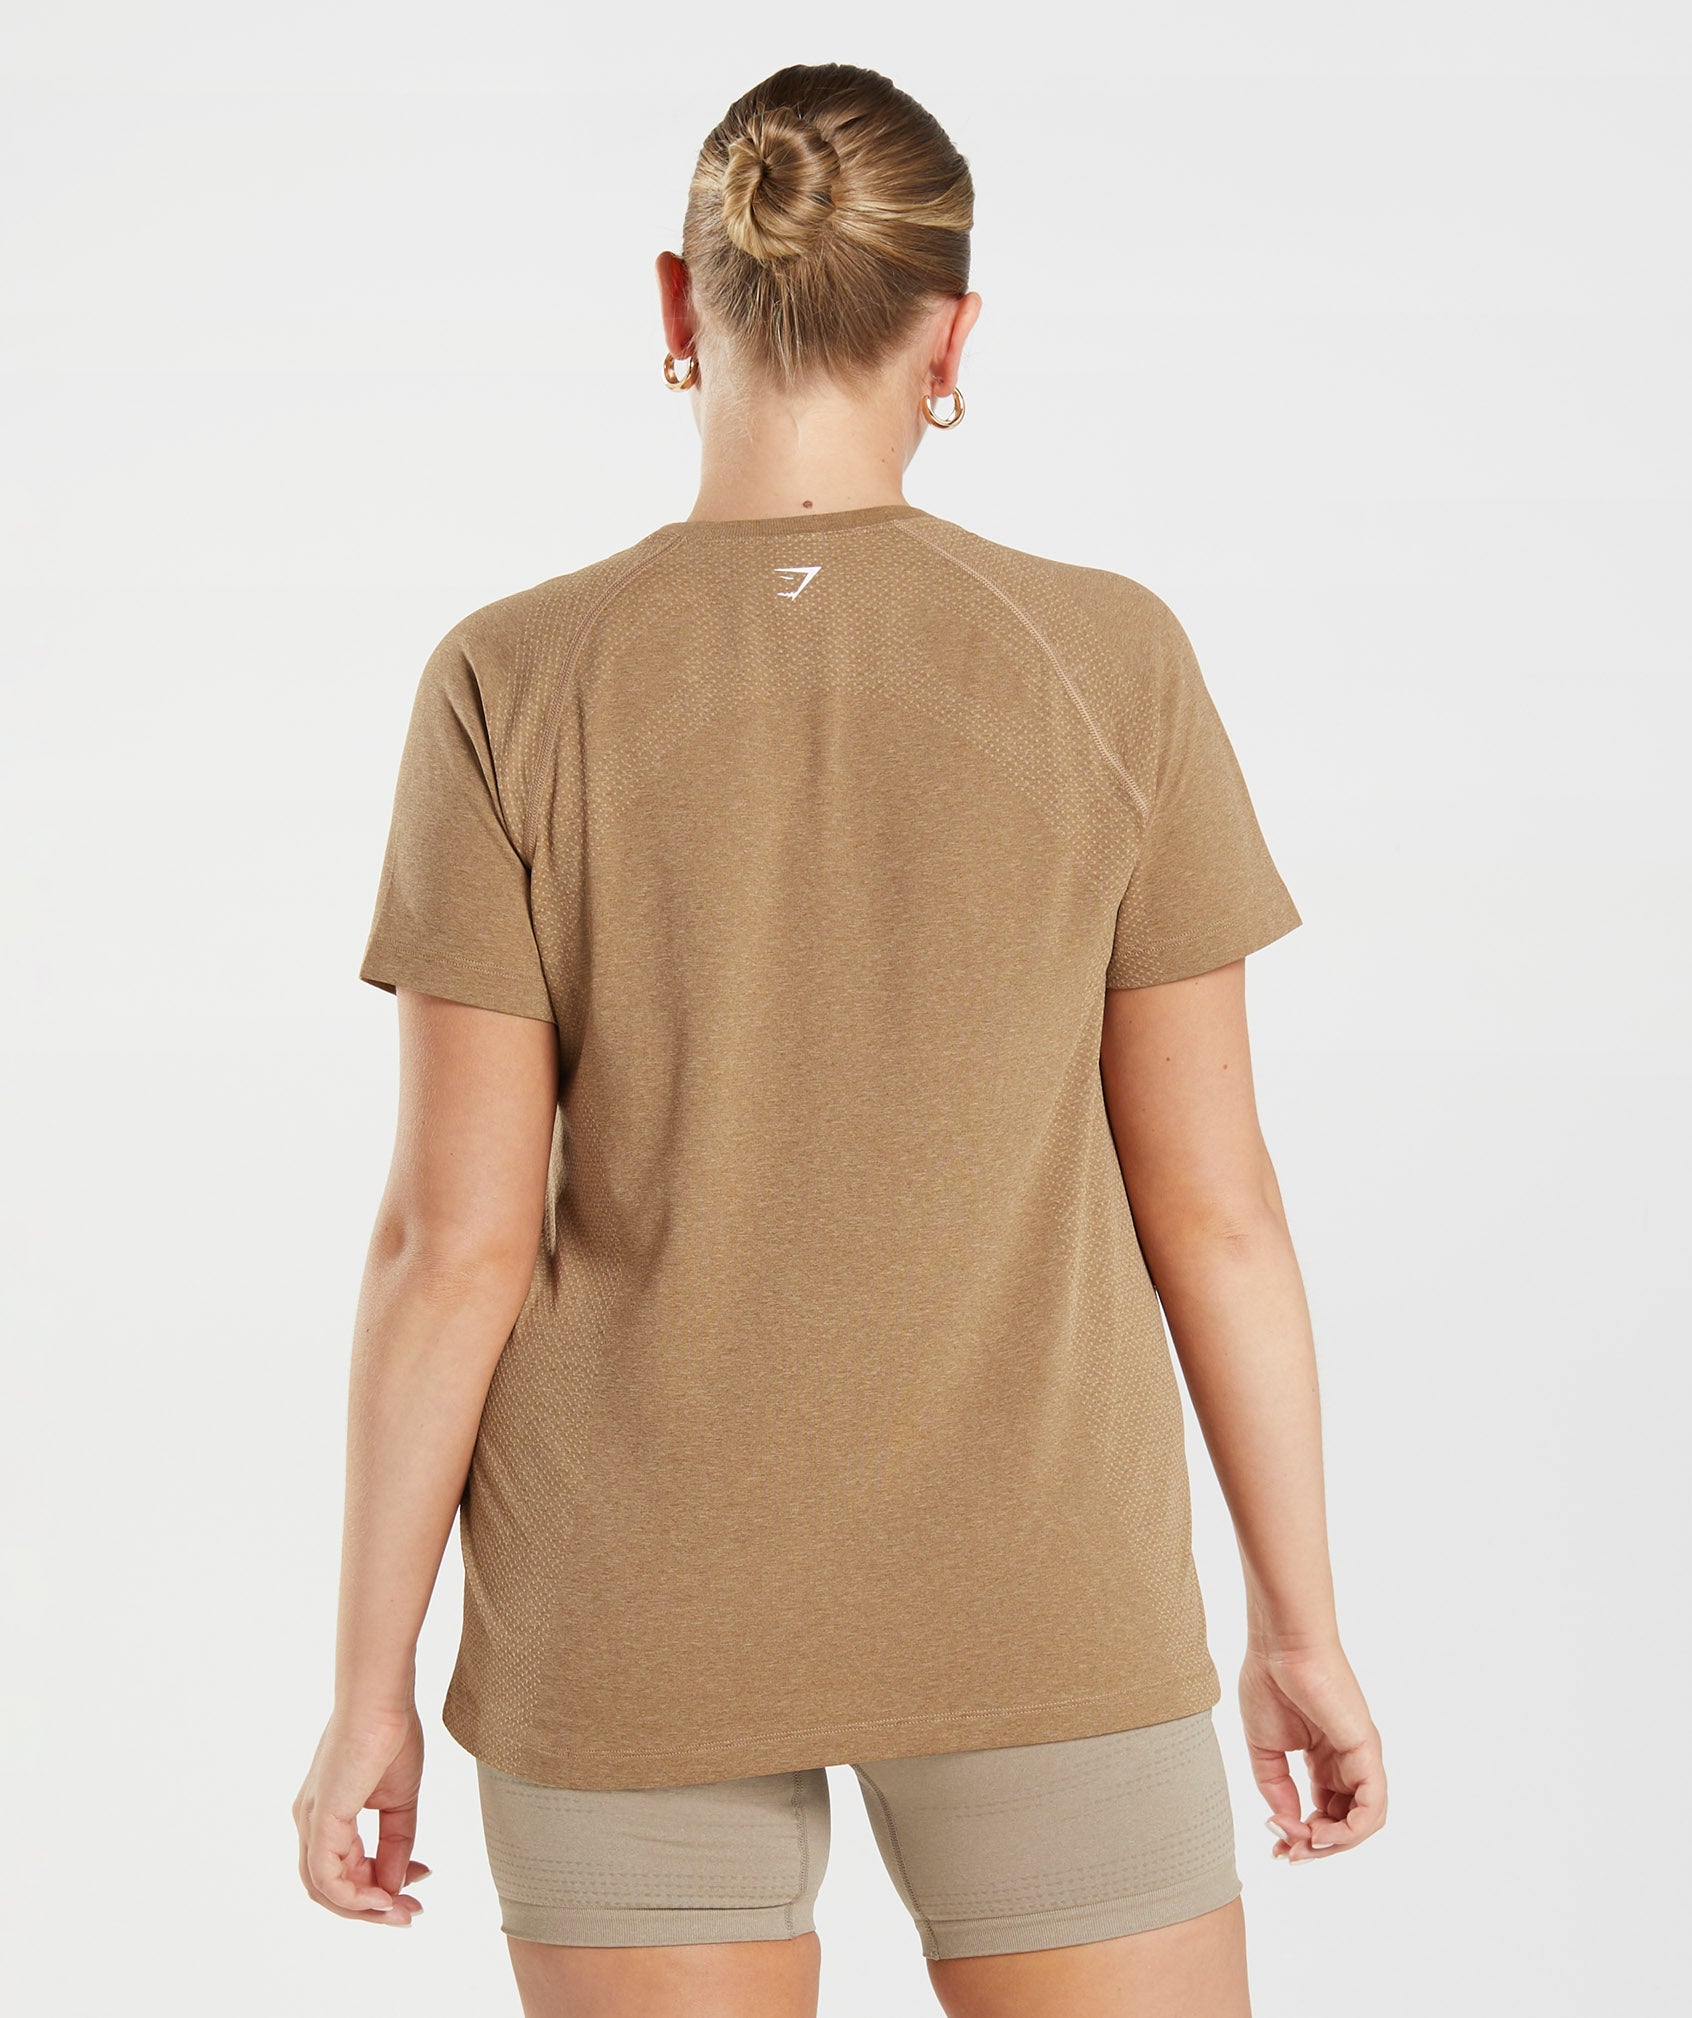 Vital Seamless 2.0 Light T-Shirt 